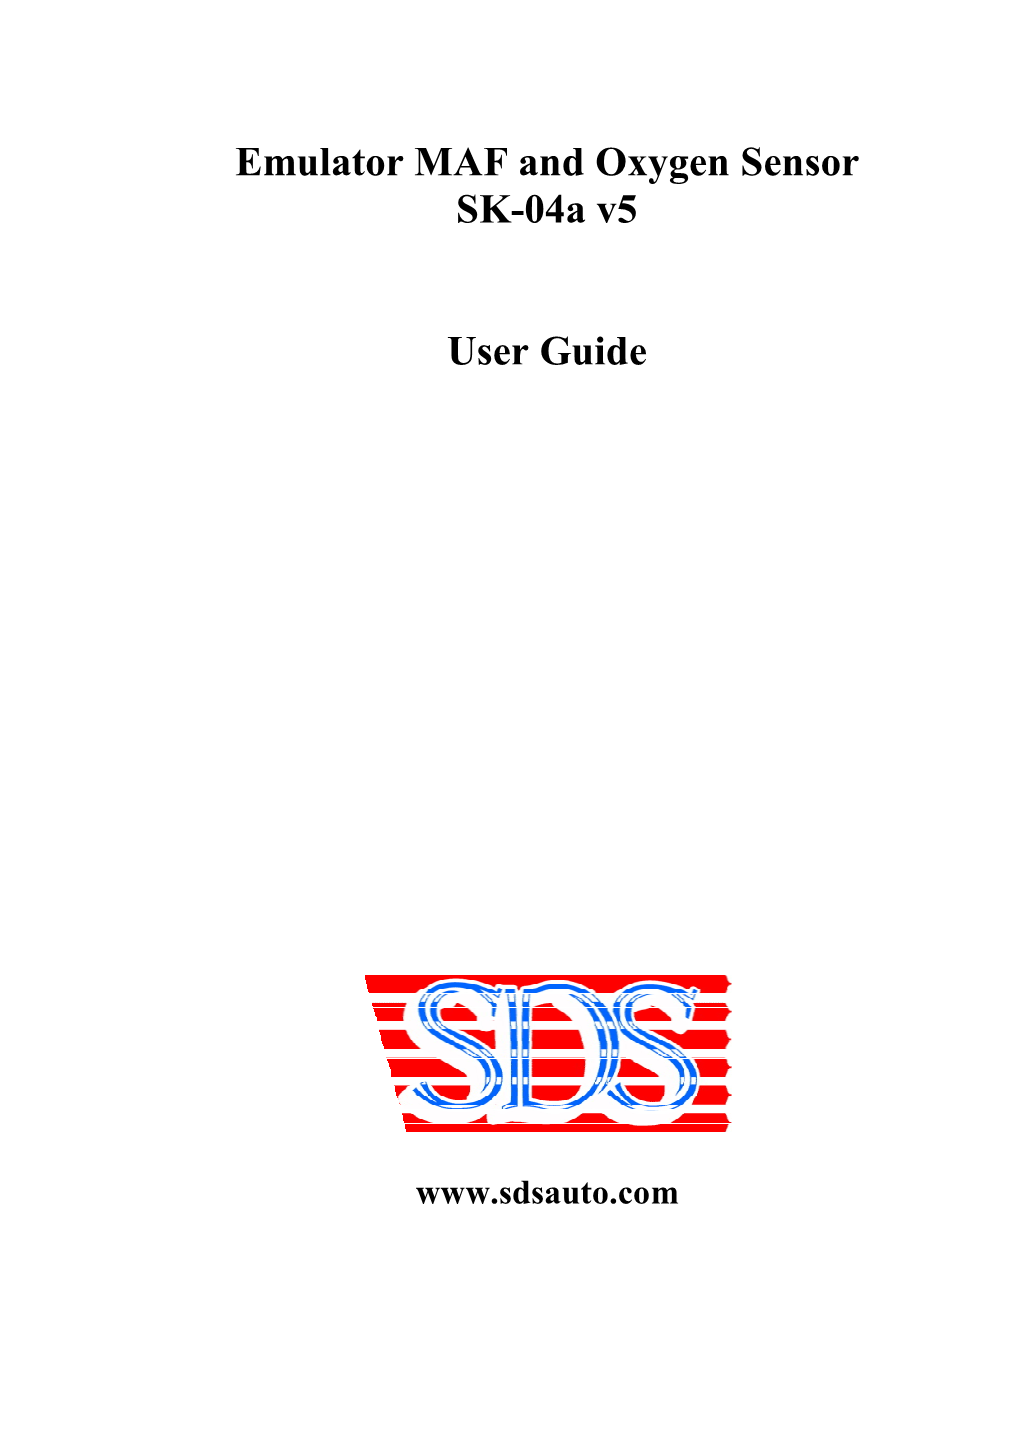 Emulator MAF and Oxygen Sensor SK-04A V5 User Guide